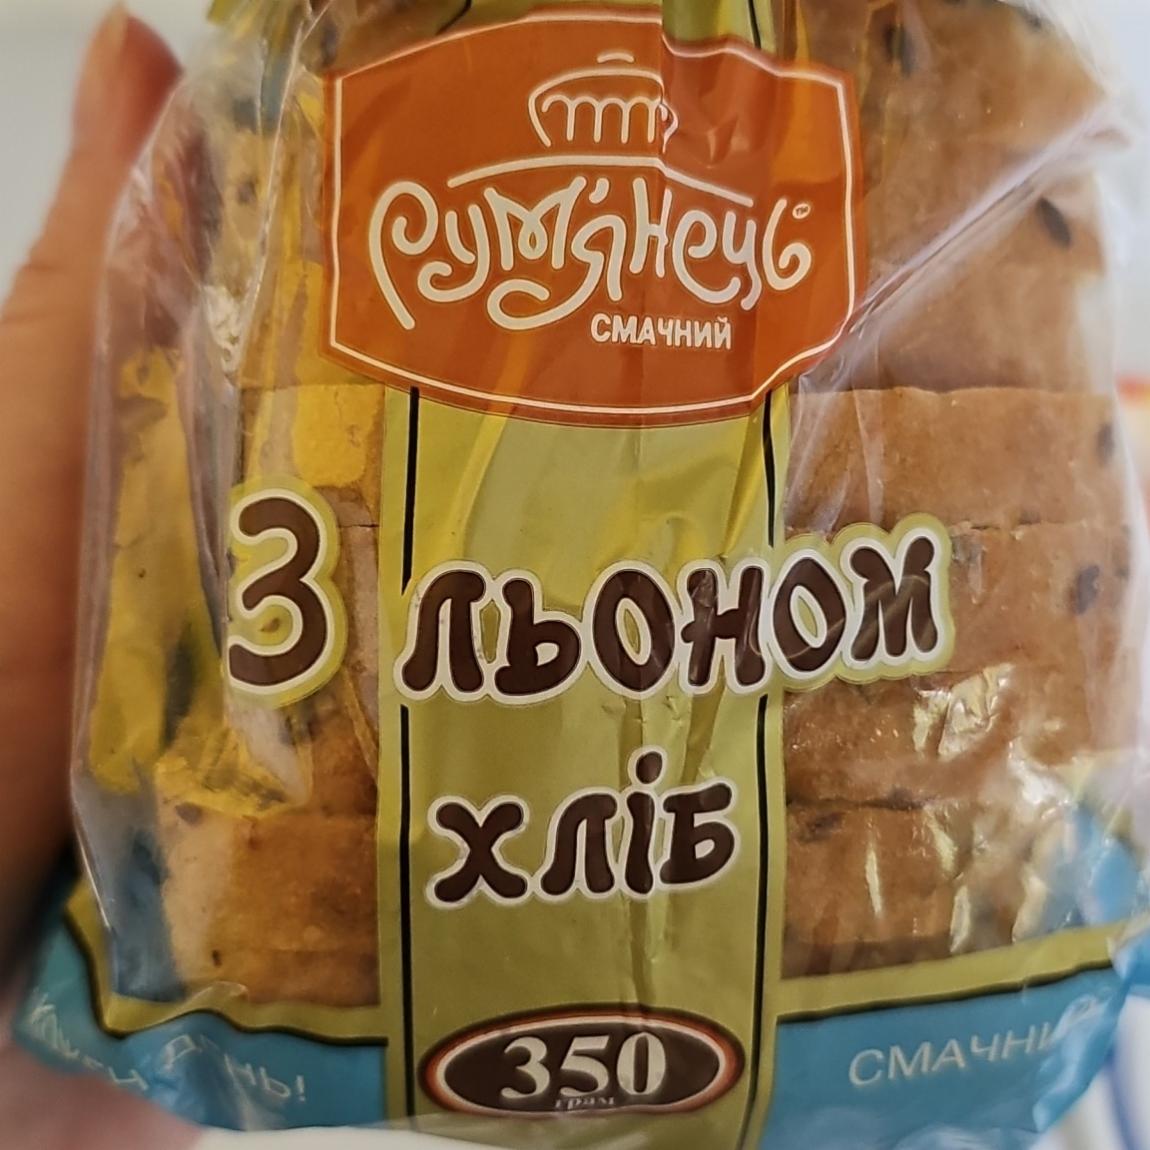 Фото - Хлеб заварной со льном Румянец